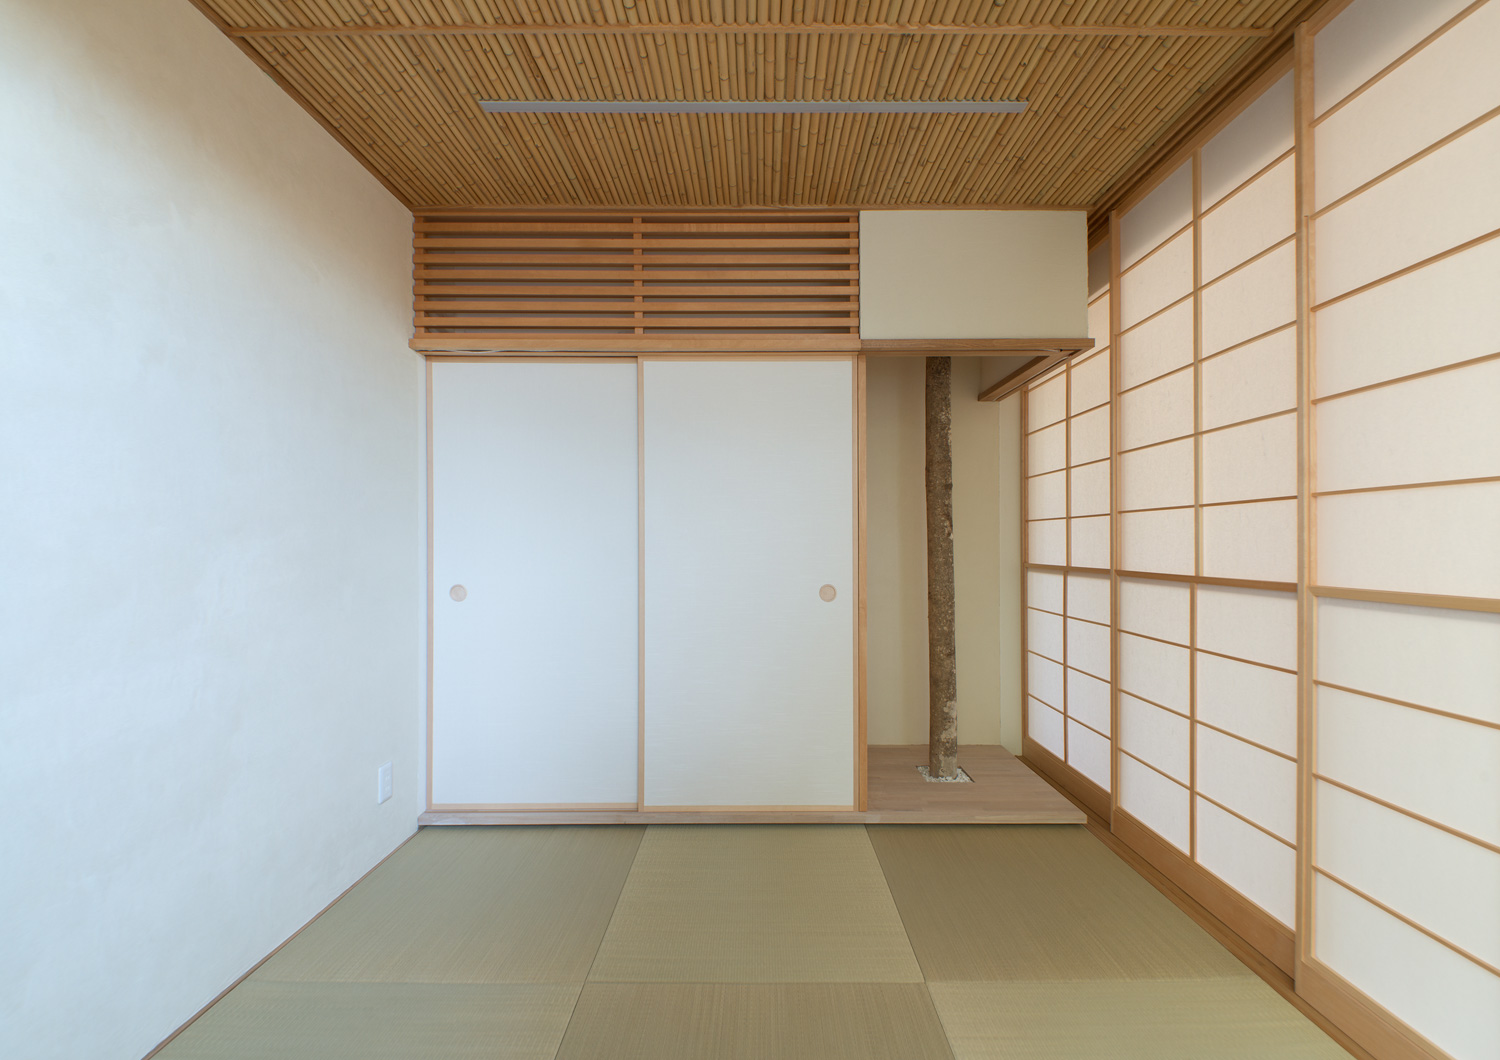 ふすまで仕切られた琉球畳の和室・デザイン住宅